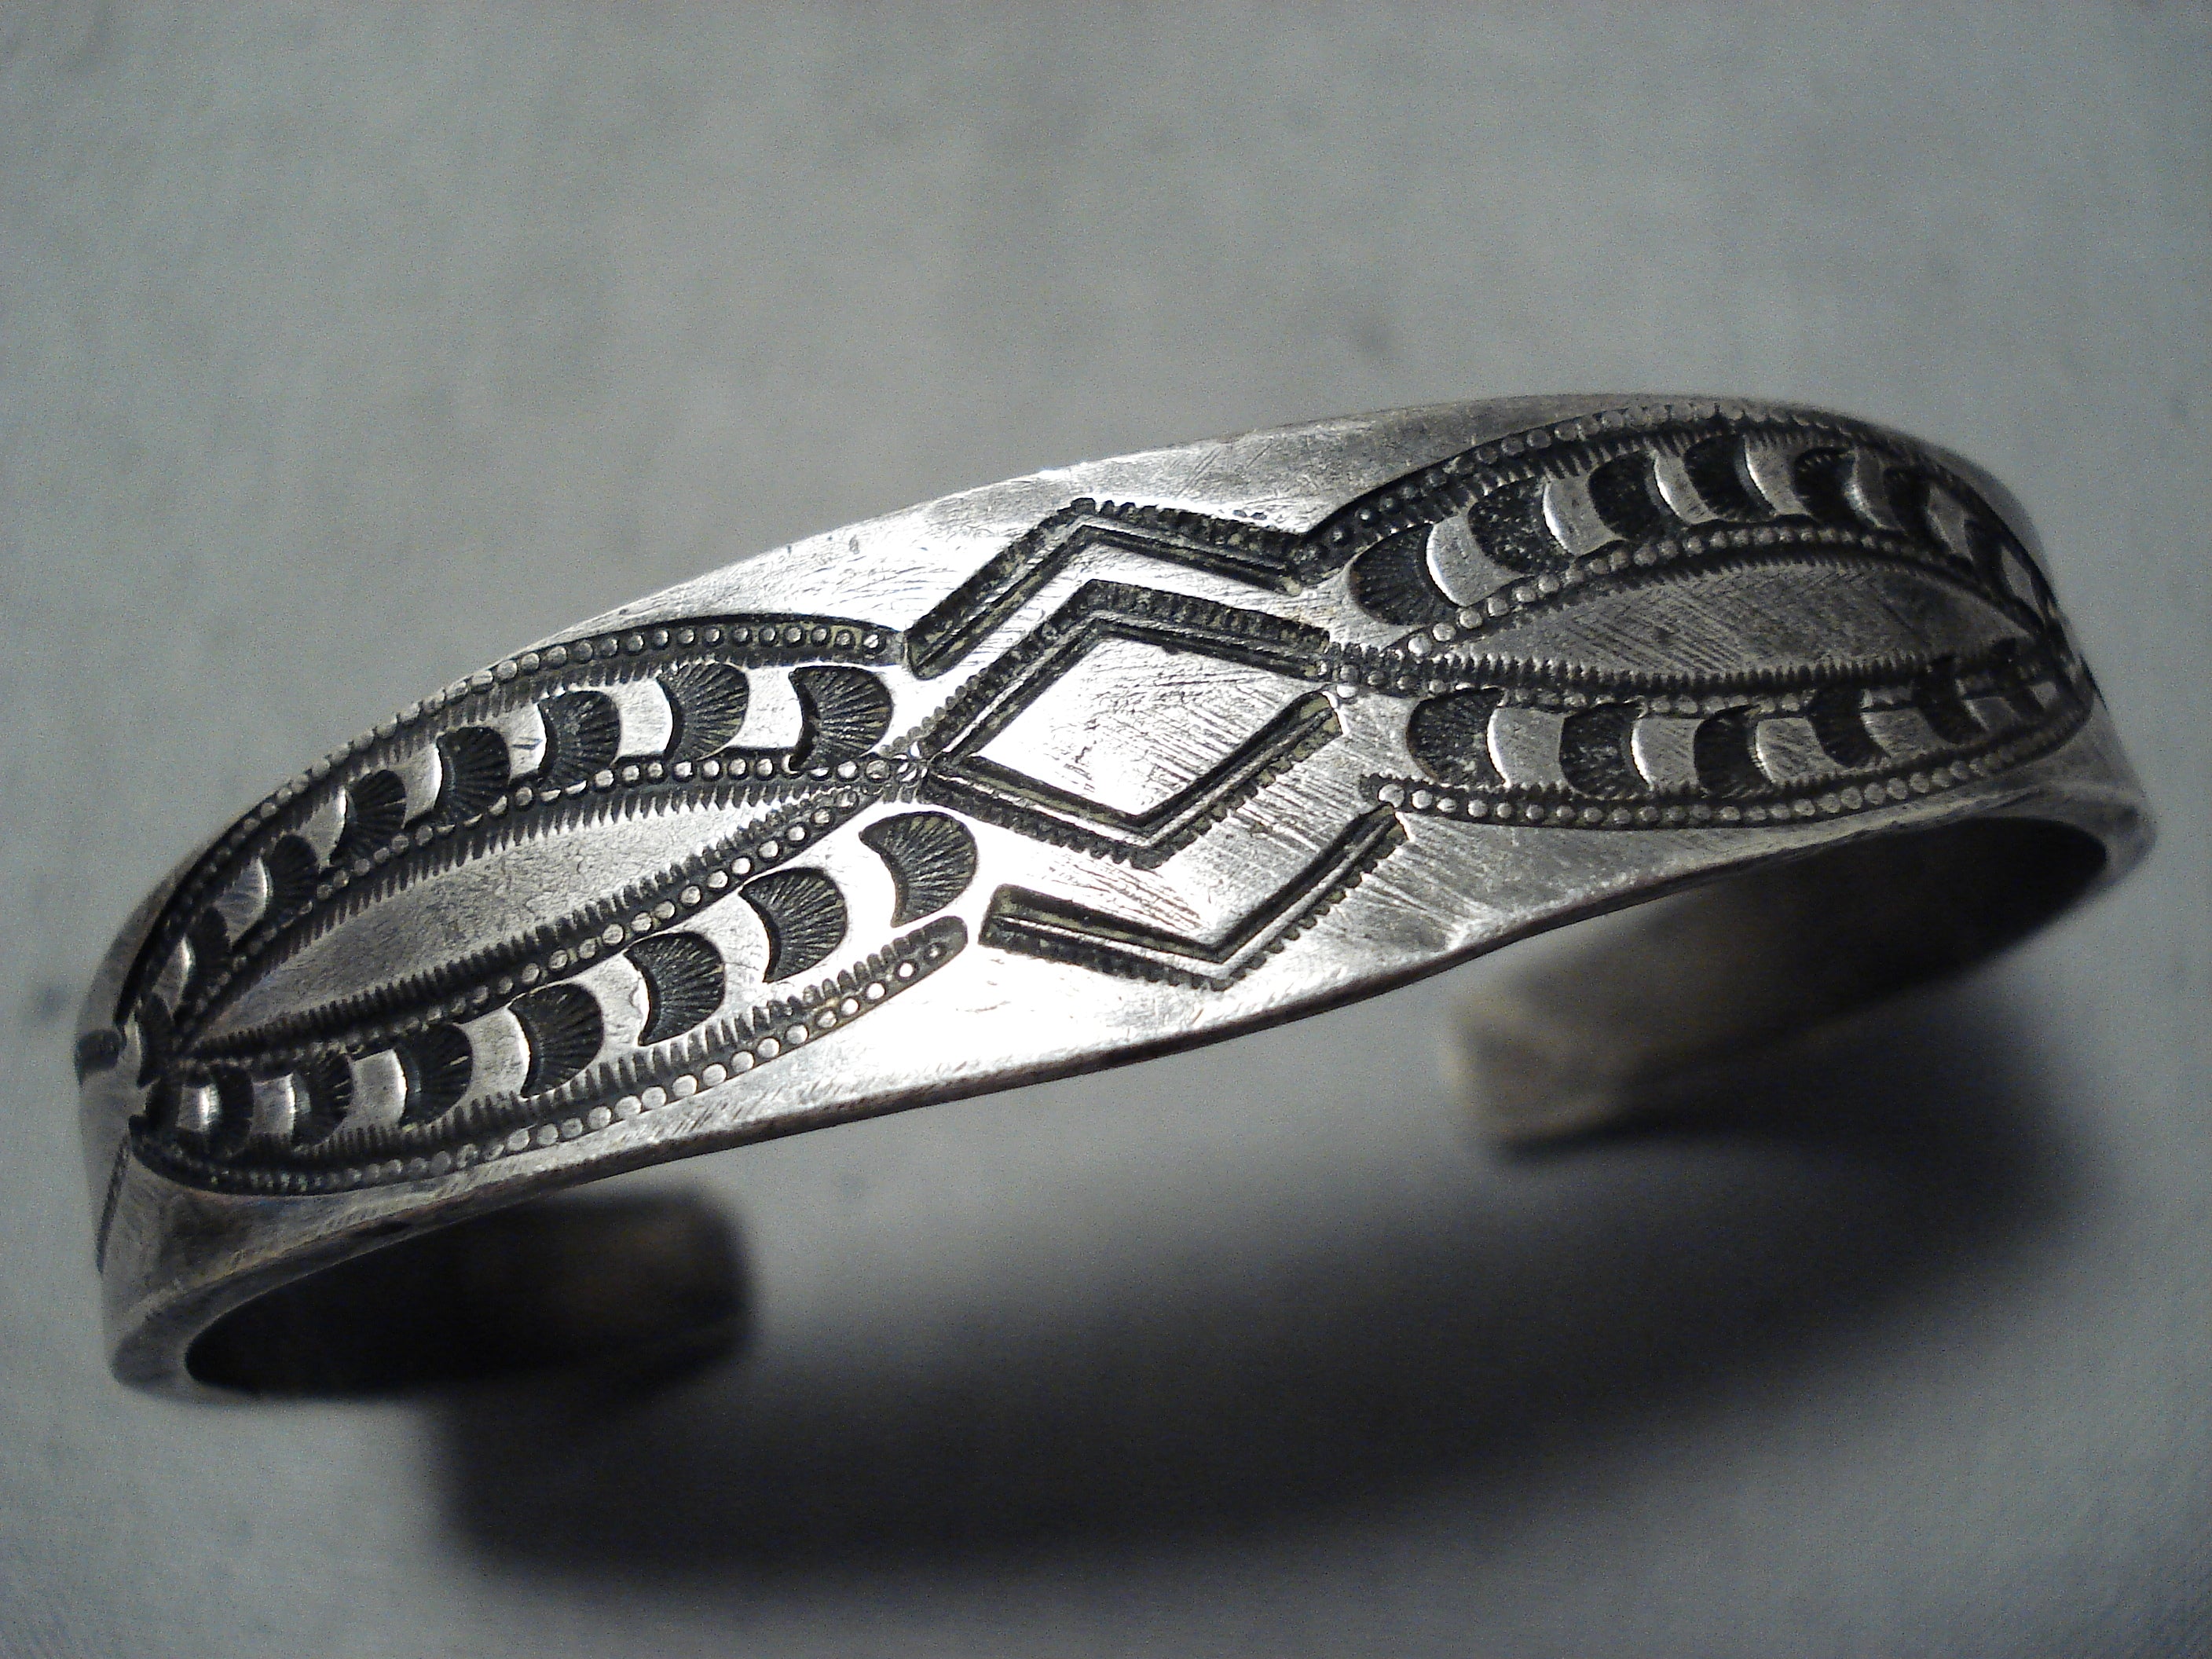 超大特価 Dyaami Lewis 1880s style Ingot bracelet ブレスレット